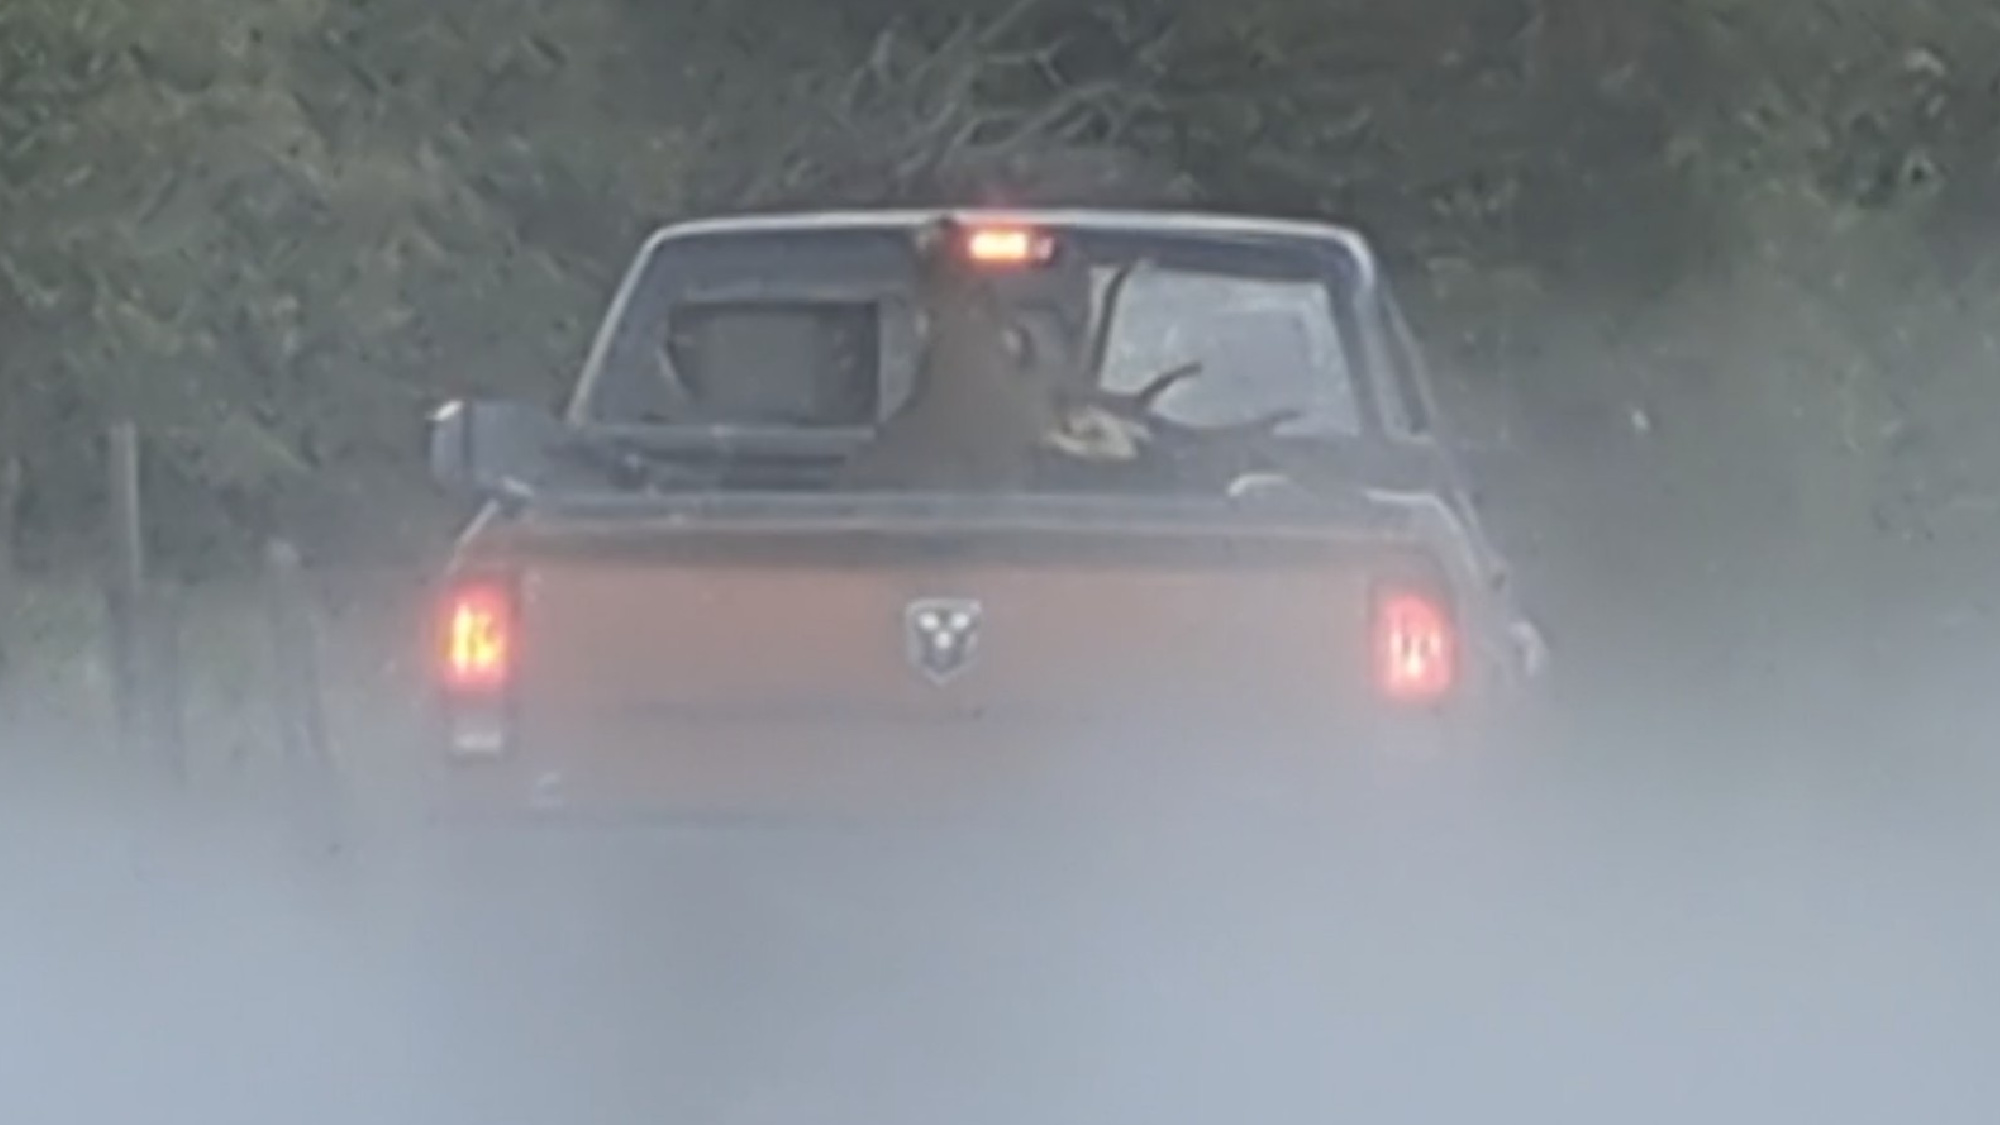 elk mount in bed of truck